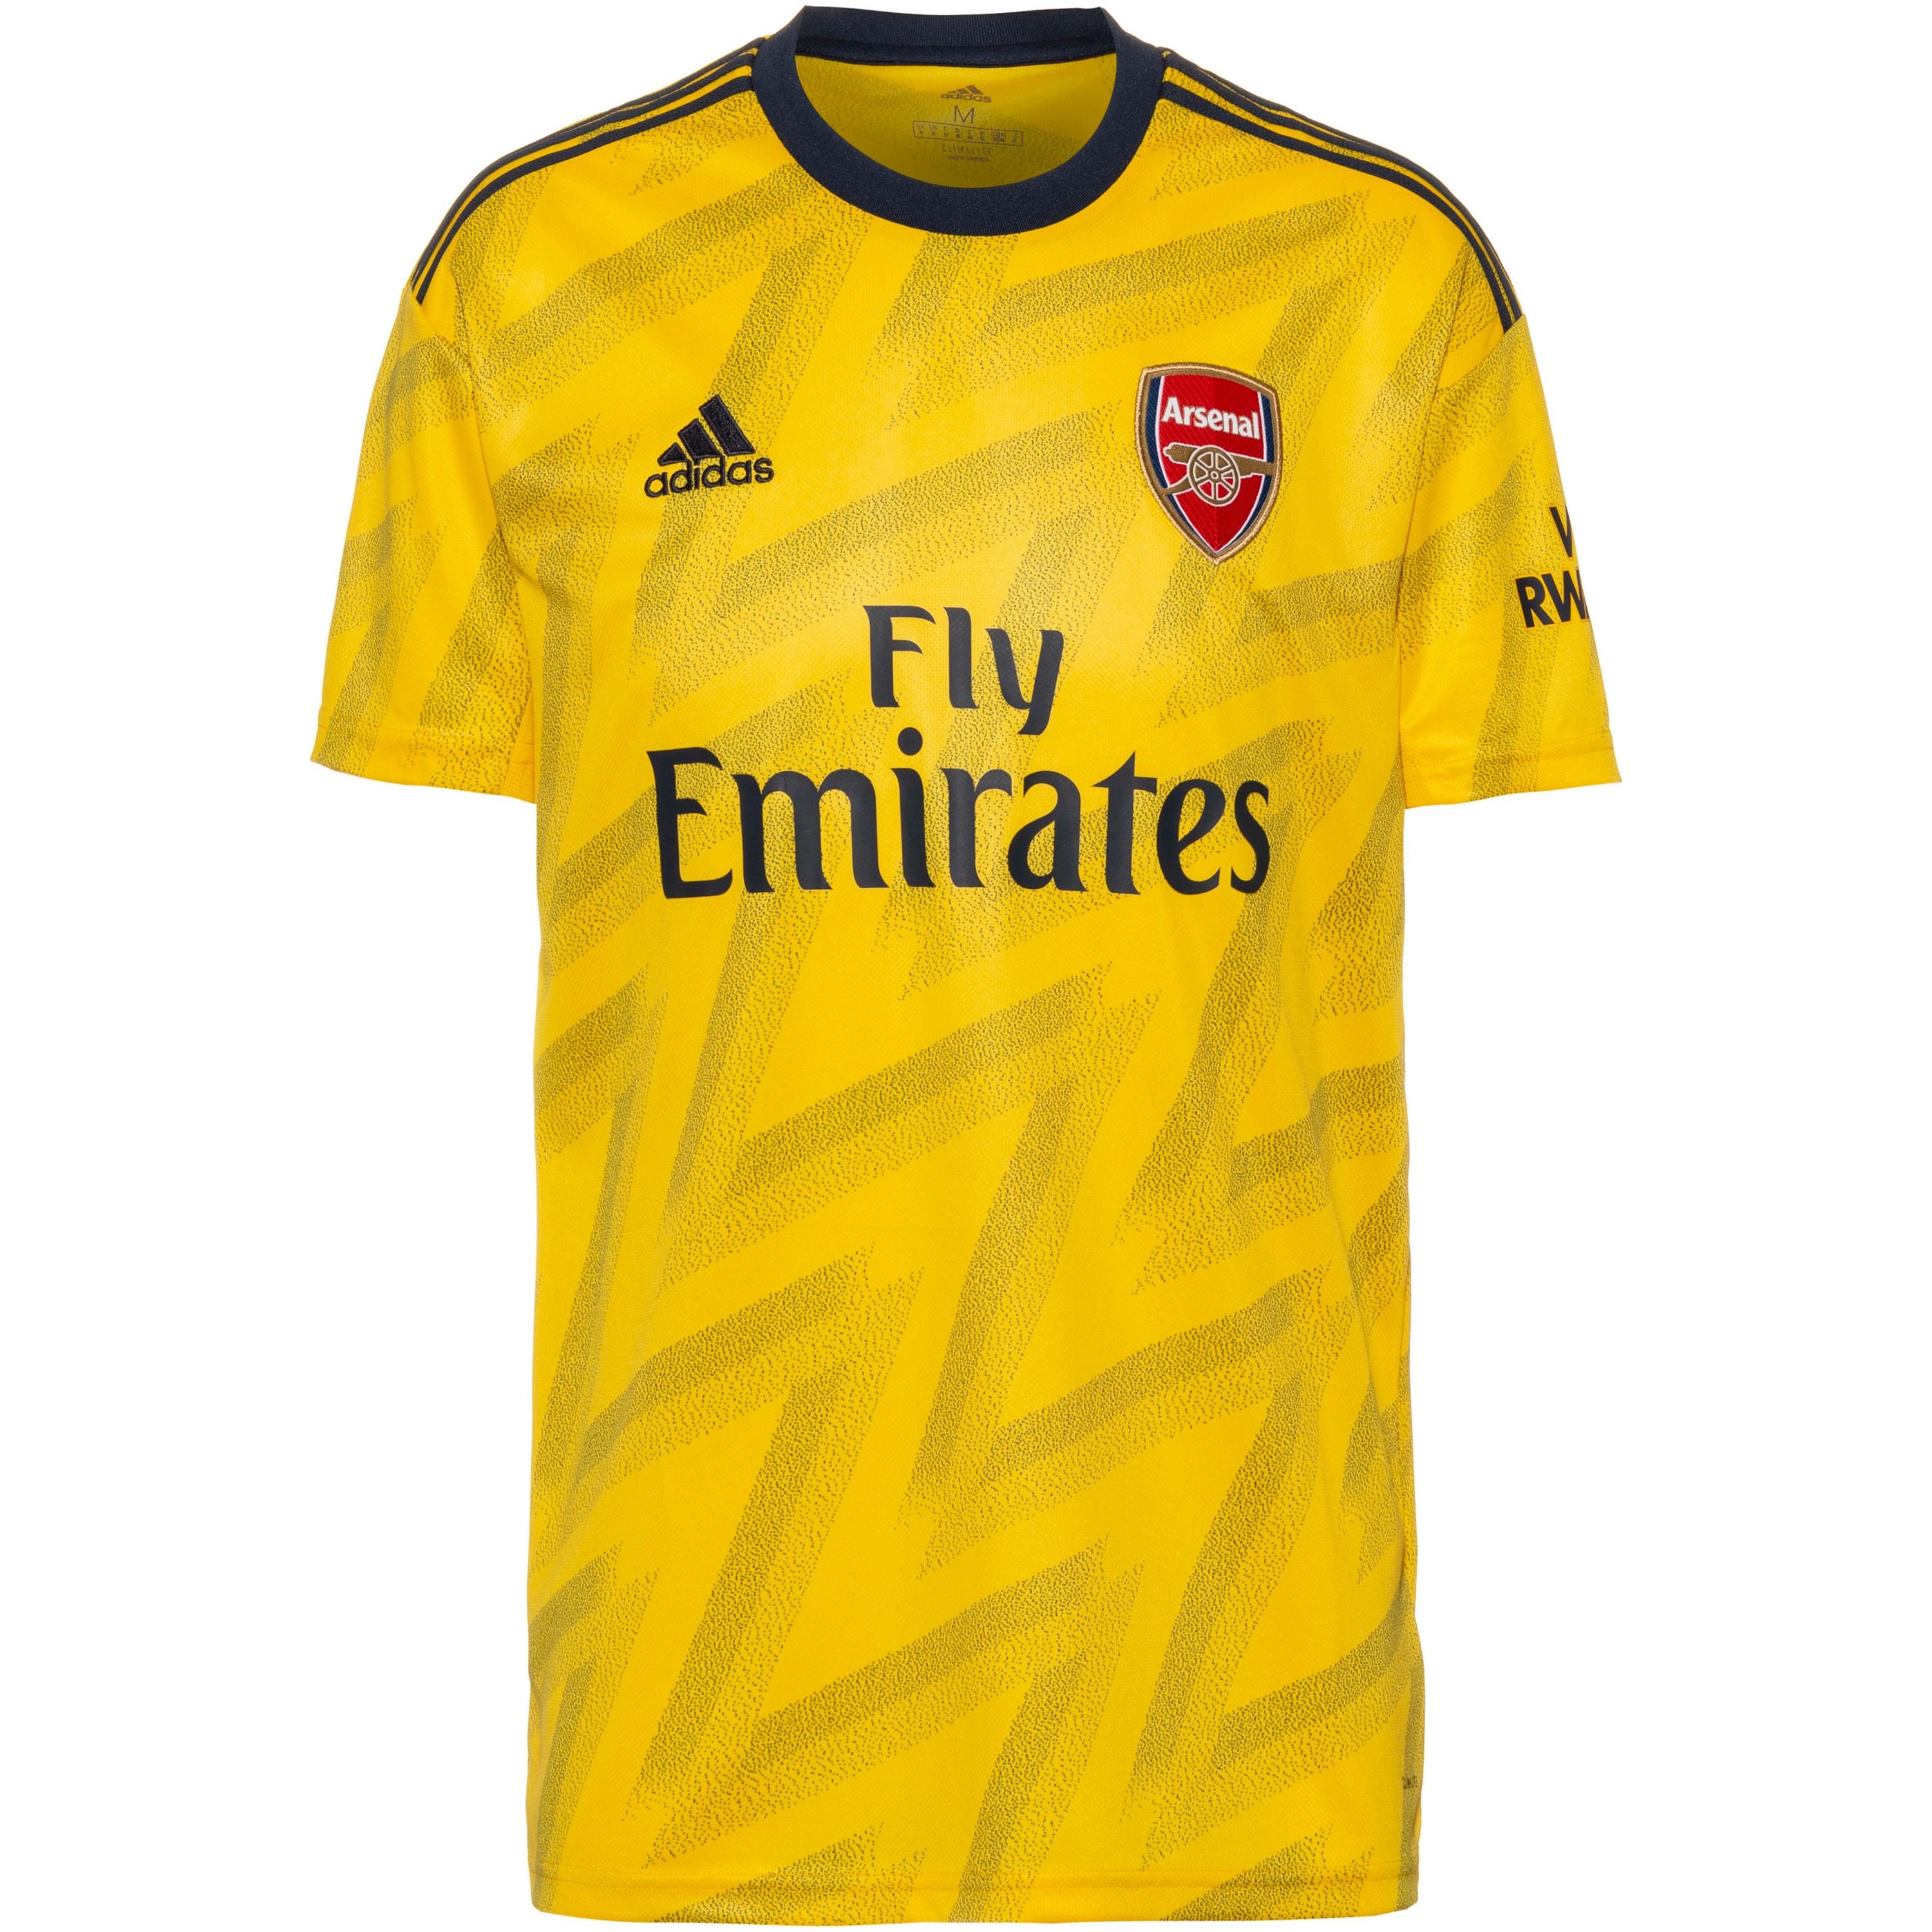 adidas Arsenal London 19/20 Auswärts Trikot Herren | MV ...